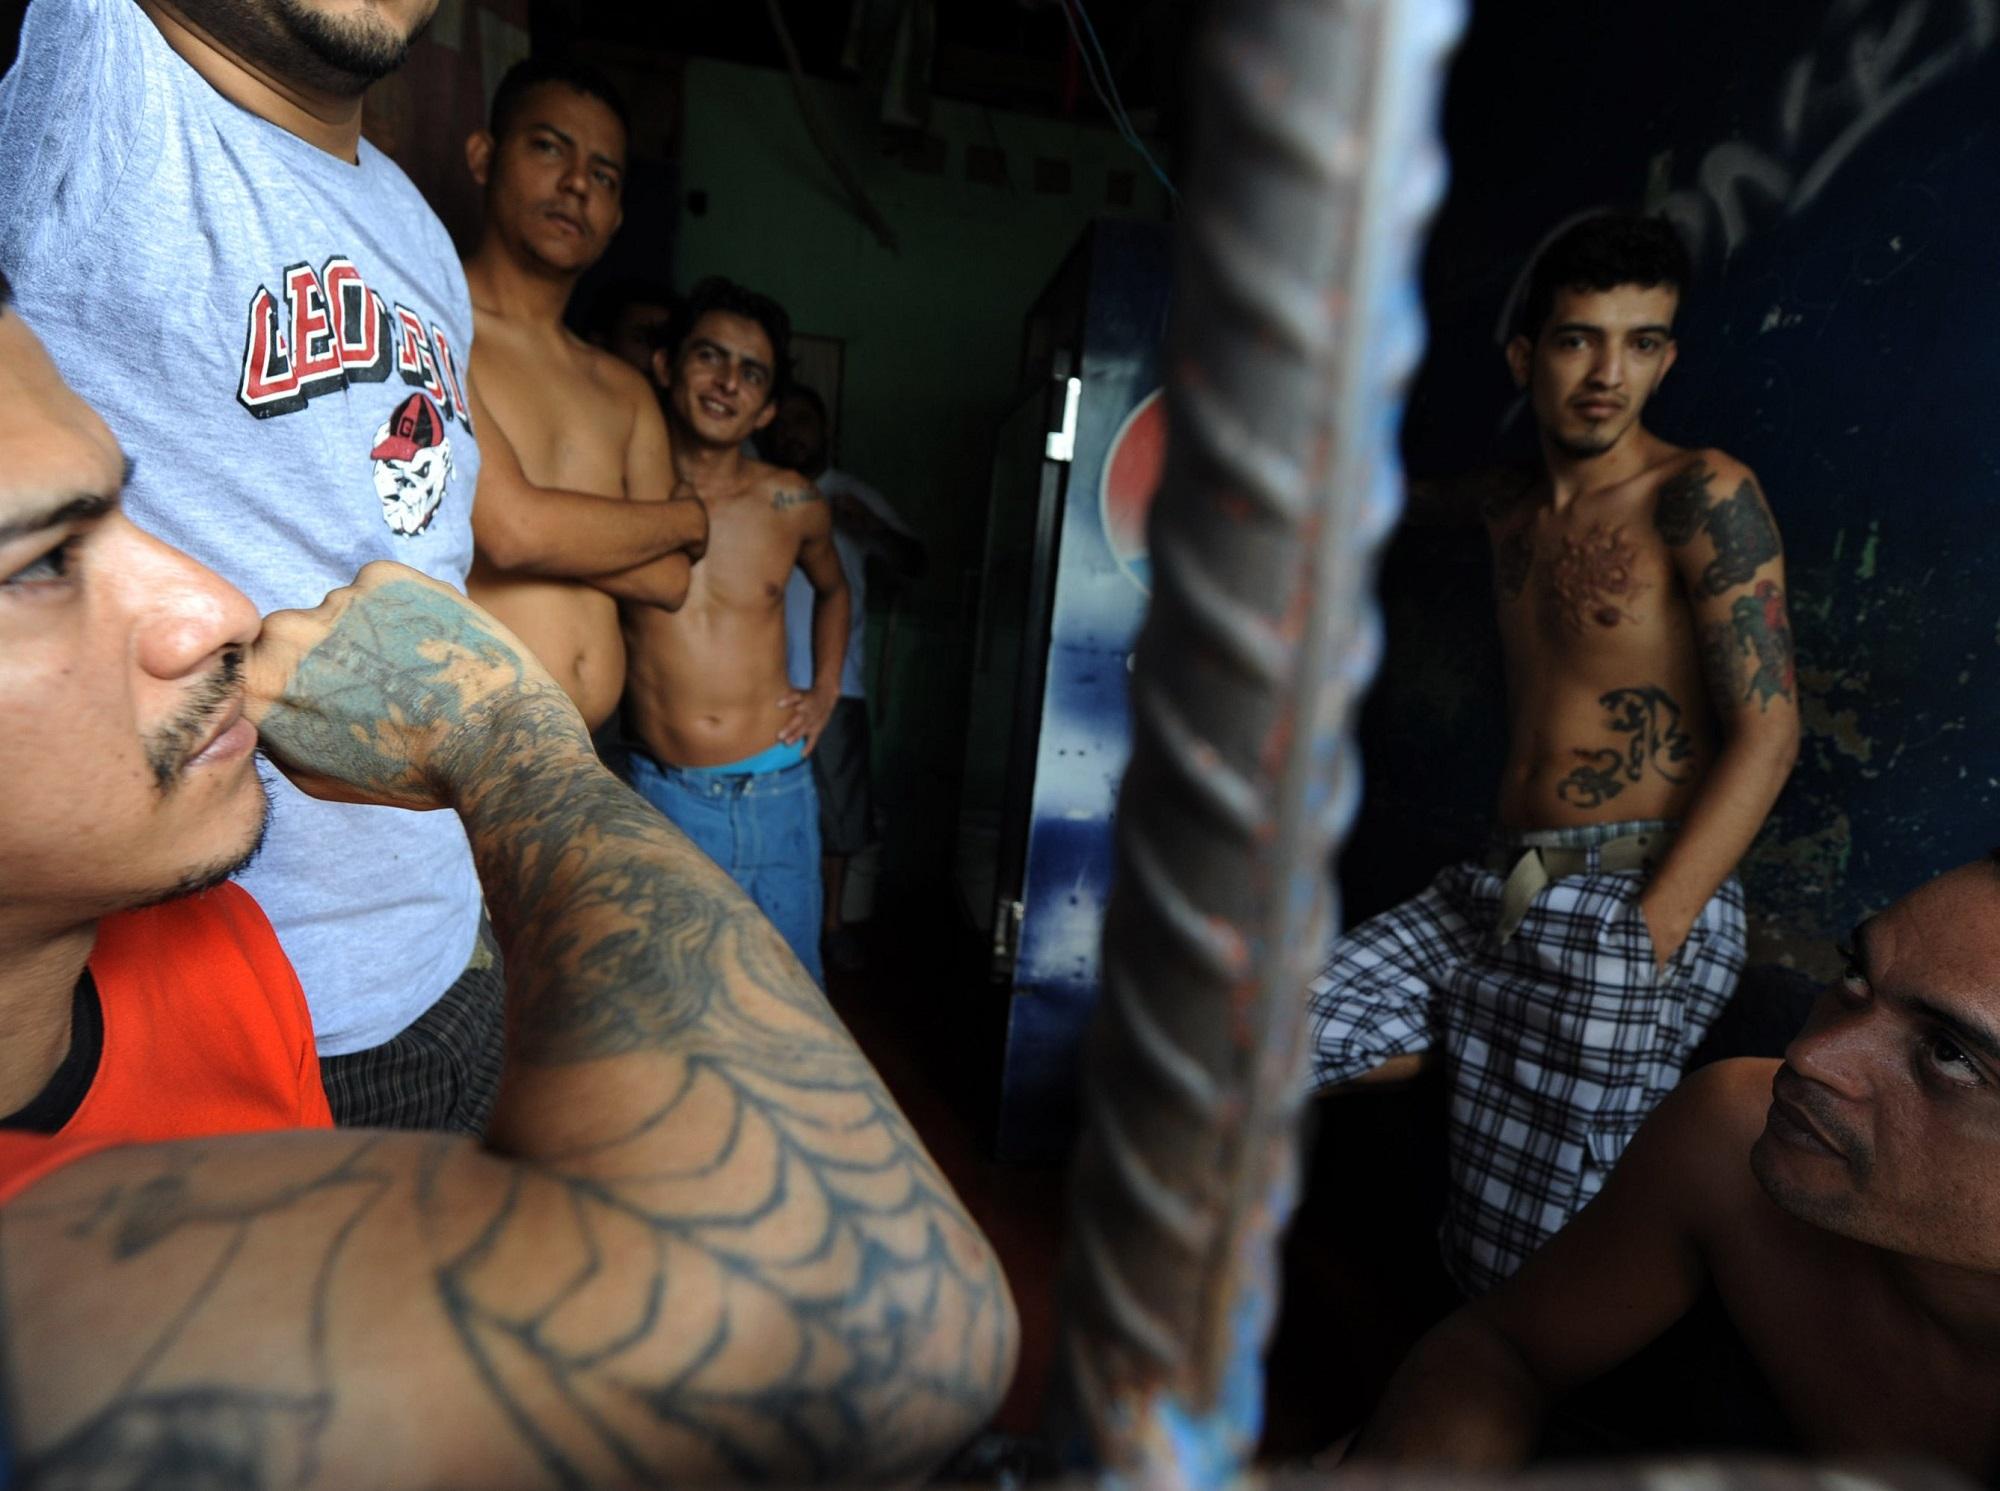 Fotografía tomada en marzo de 2012 dentro del sector de la Mara Salvatrucha de la Penitenciaría Nacional de San Pedro Sula, cárcel que se cerrará definitivamente en octubre de 2017. Foto Orlando Sierra (AFP).